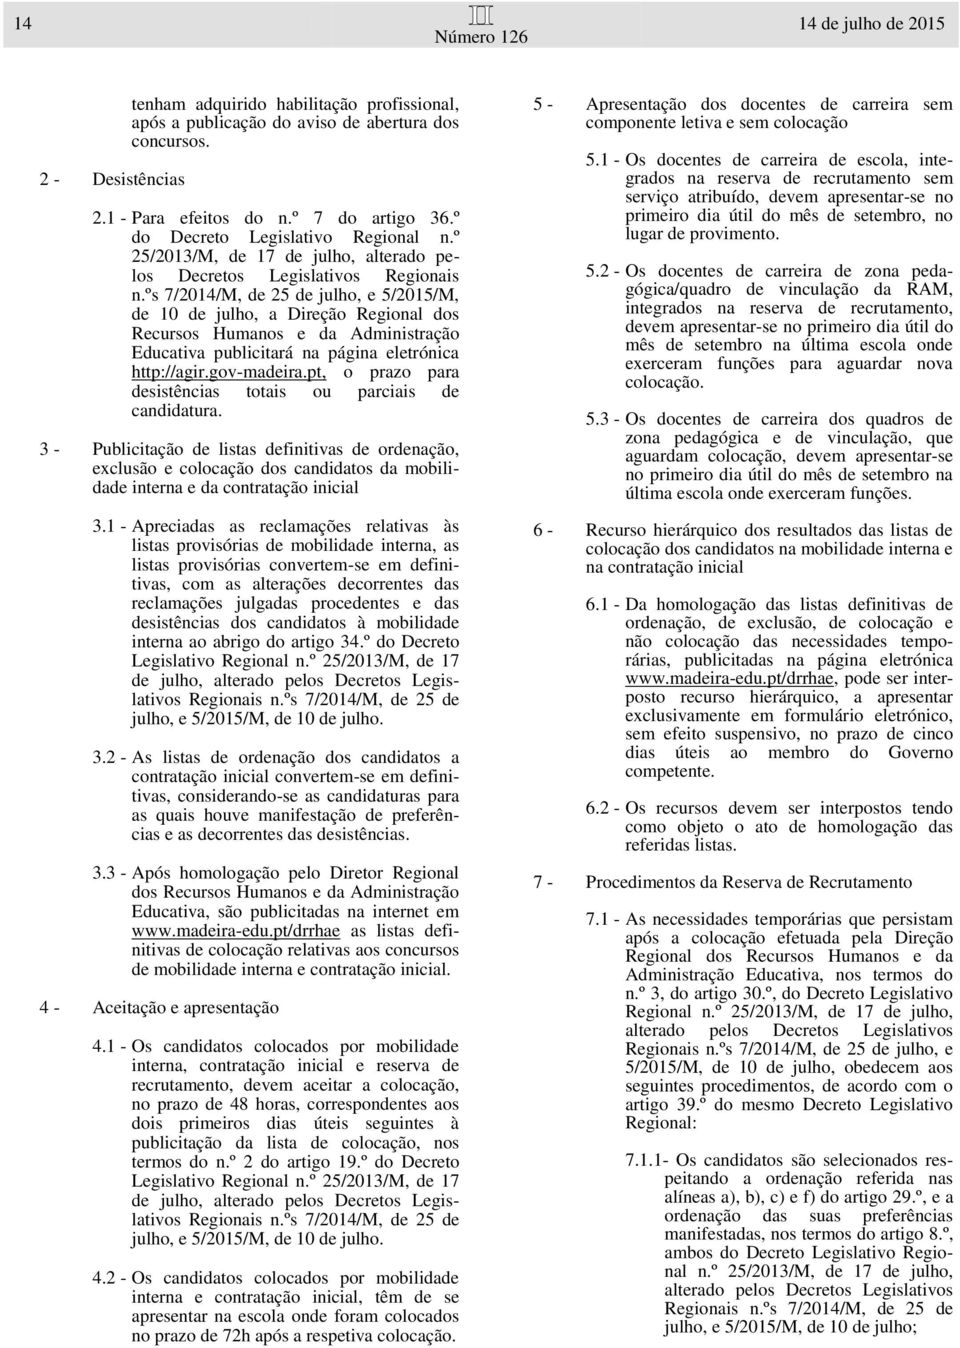 ºs 7/2014/M, de 25 de julho, e 5/2015/M, de 10 de julho, a Direção Regional dos Recursos Humanos e da Administração Educativa publicitará na página eletrónica http://agir.gov-madeira.